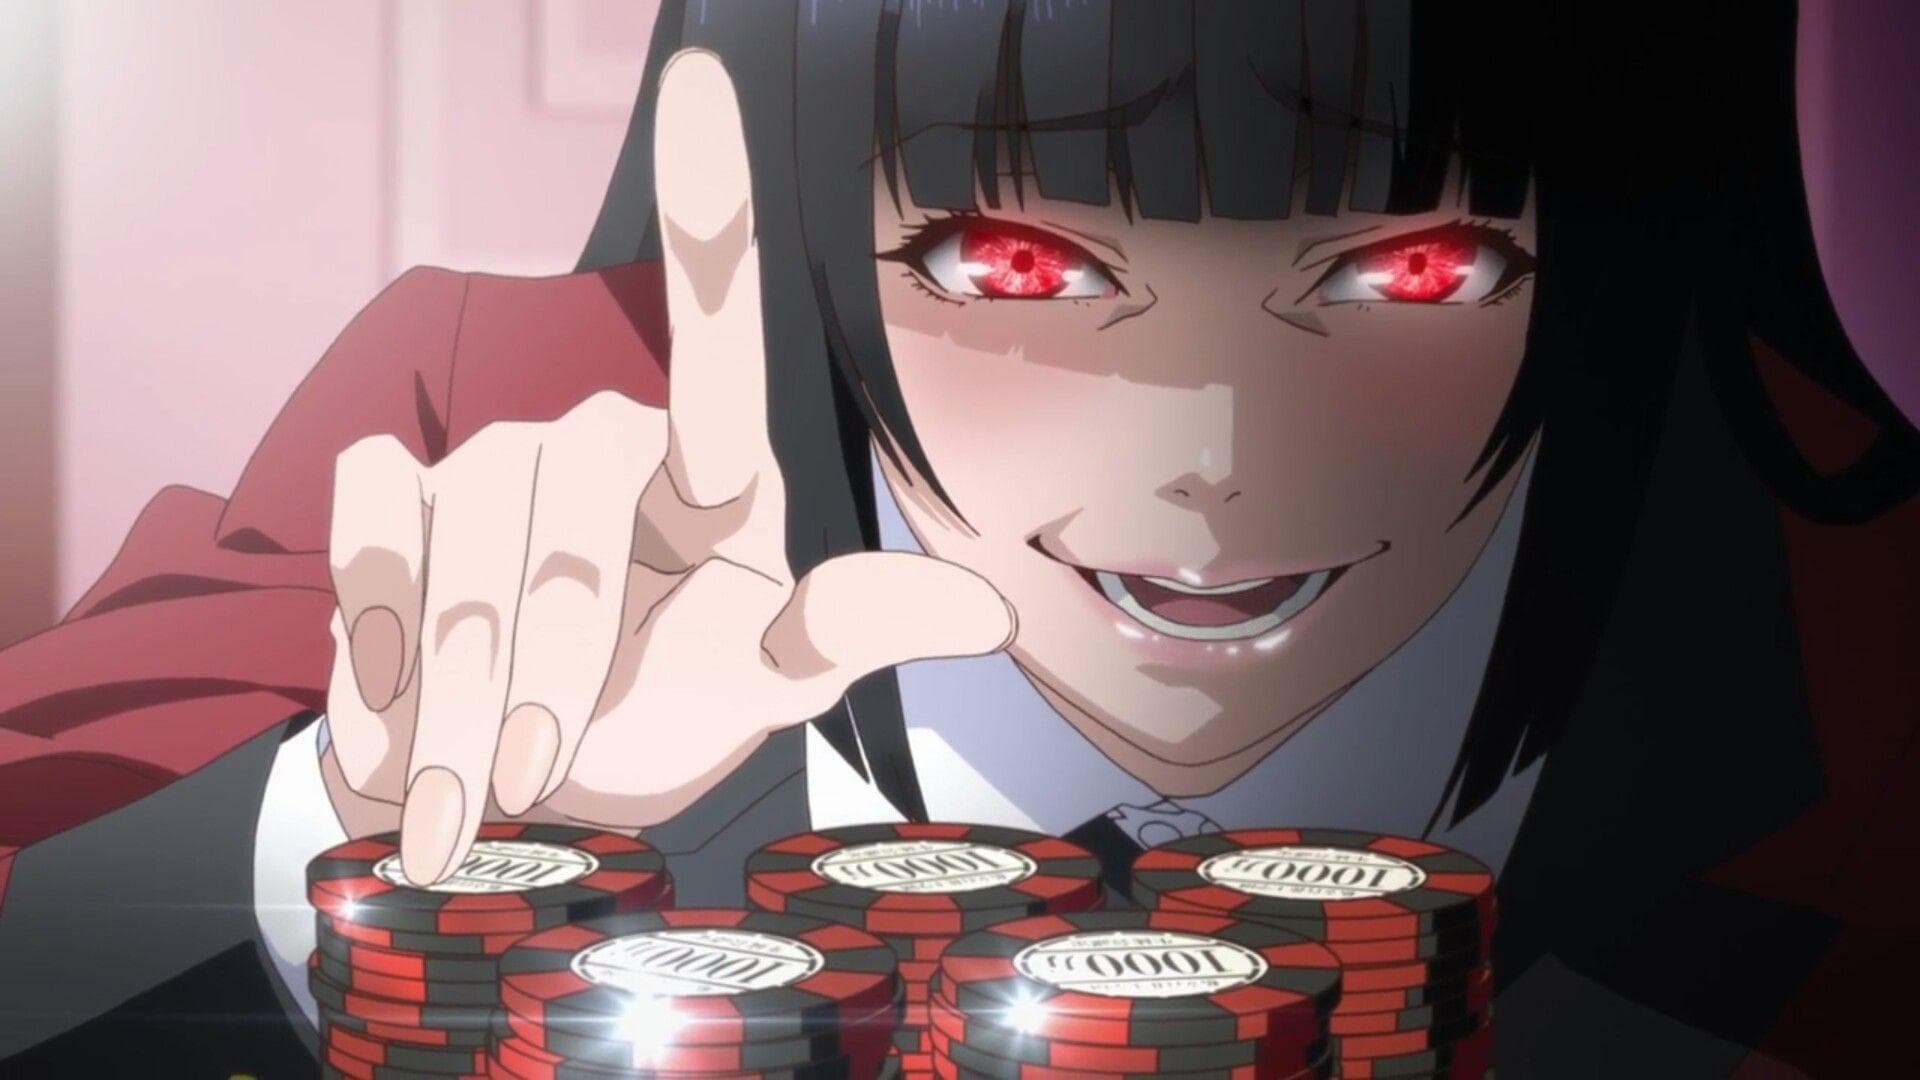 Gambling Anime Shows to Watch After Kakegurui